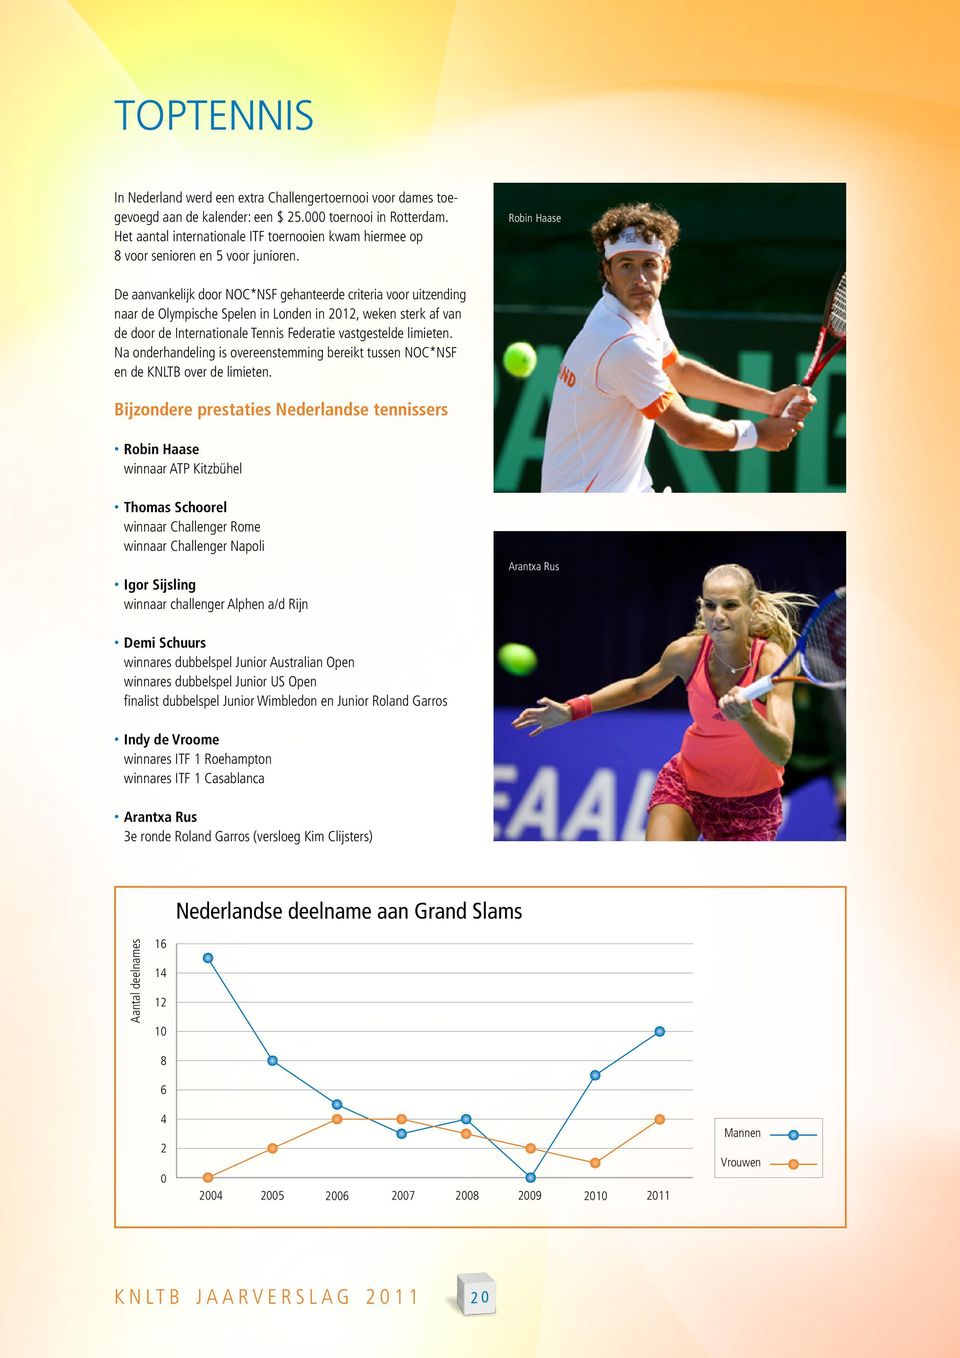 Robin Haase De aanvankelijk door NOC*NSF gehanteerde criteria voor uitzending naar de Olympische Spelen in Londen in 2012, weken sterk af van de door de Internationale Tennis Federatie vastgestelde